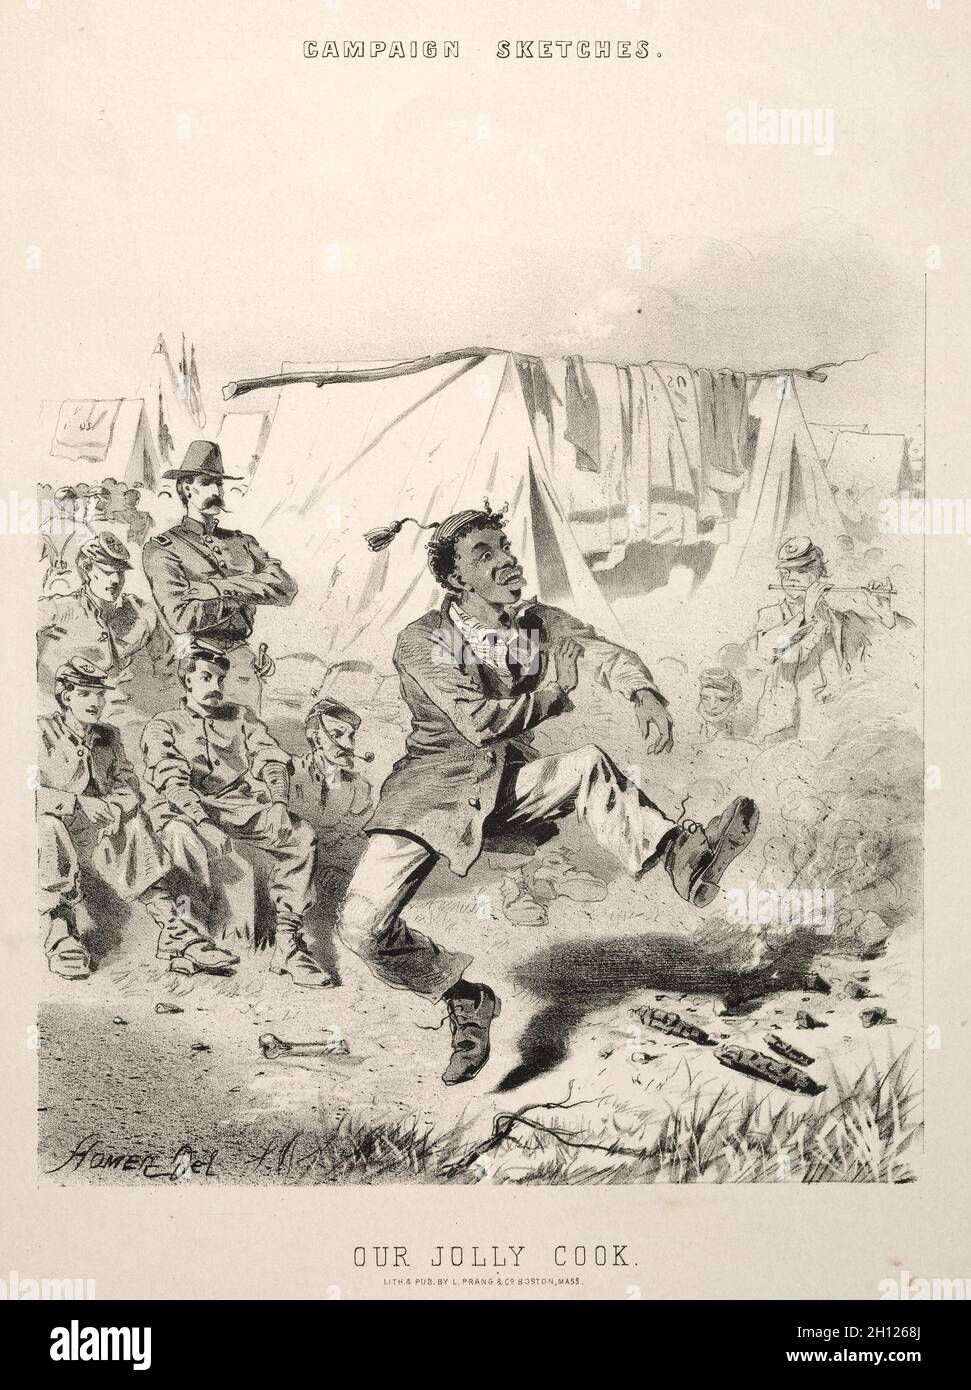 Schizzi della campagna: Il nostro Jolly Cook, 1863. Winslow Homer (americano, 1836-1910). Litografia; Foto Stock